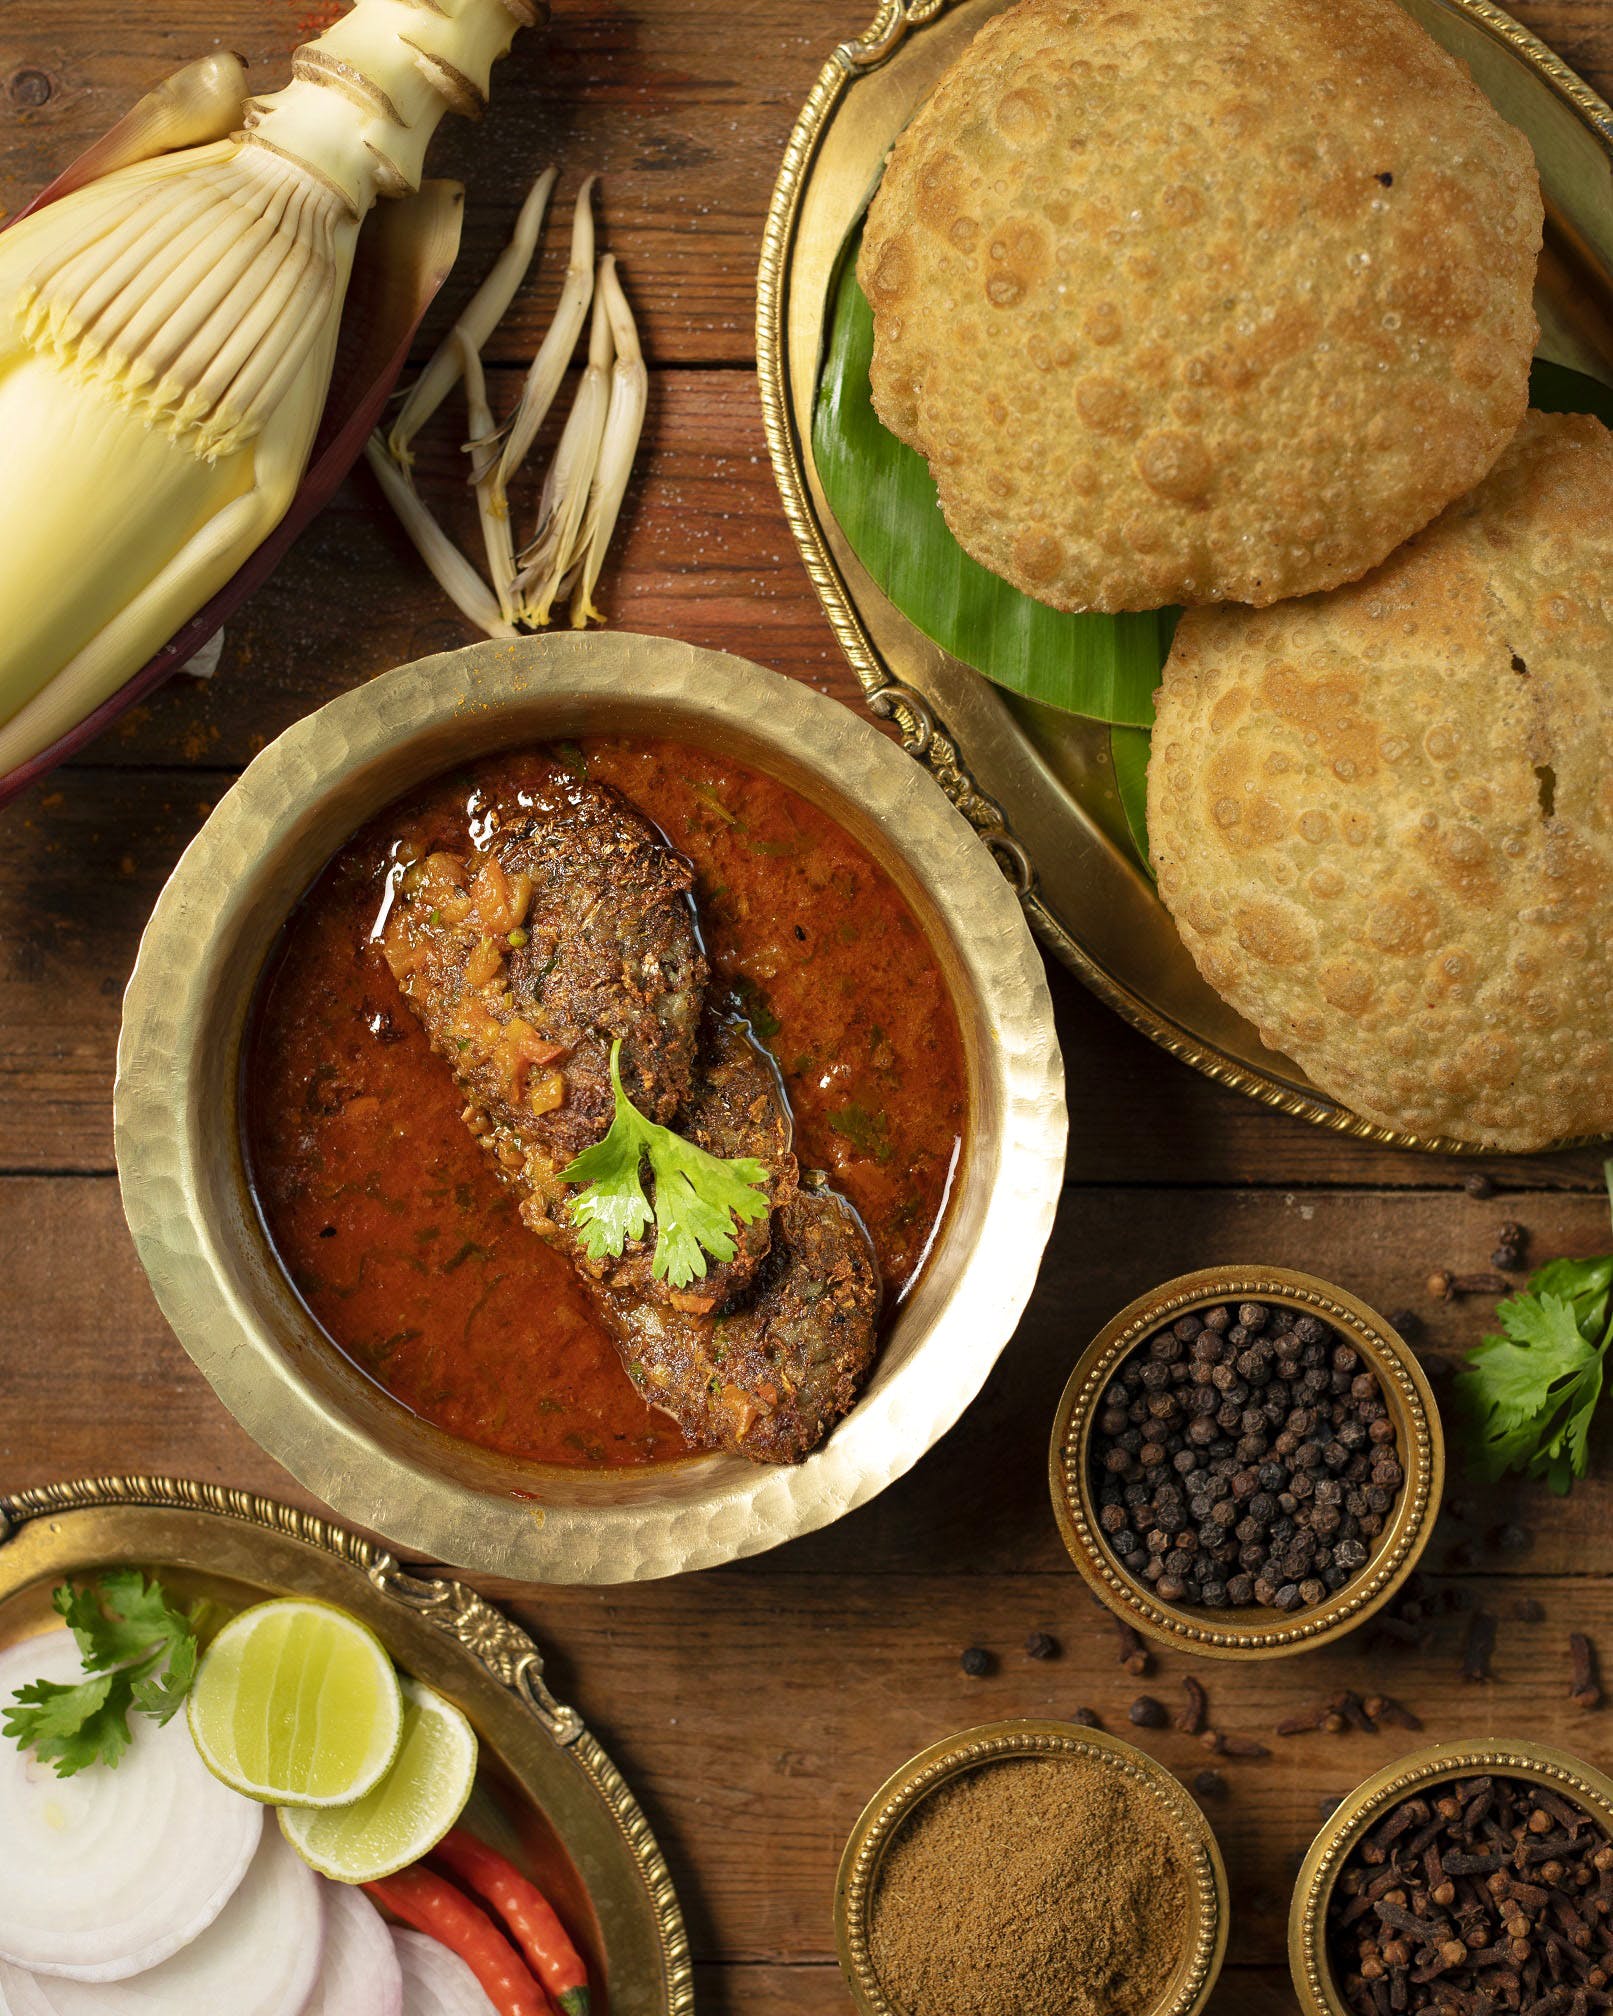 Dish,Food,Cuisine,Ingredient,Produce,Recipe,Comfort food,Indian cuisine,Gravy,Muhammara